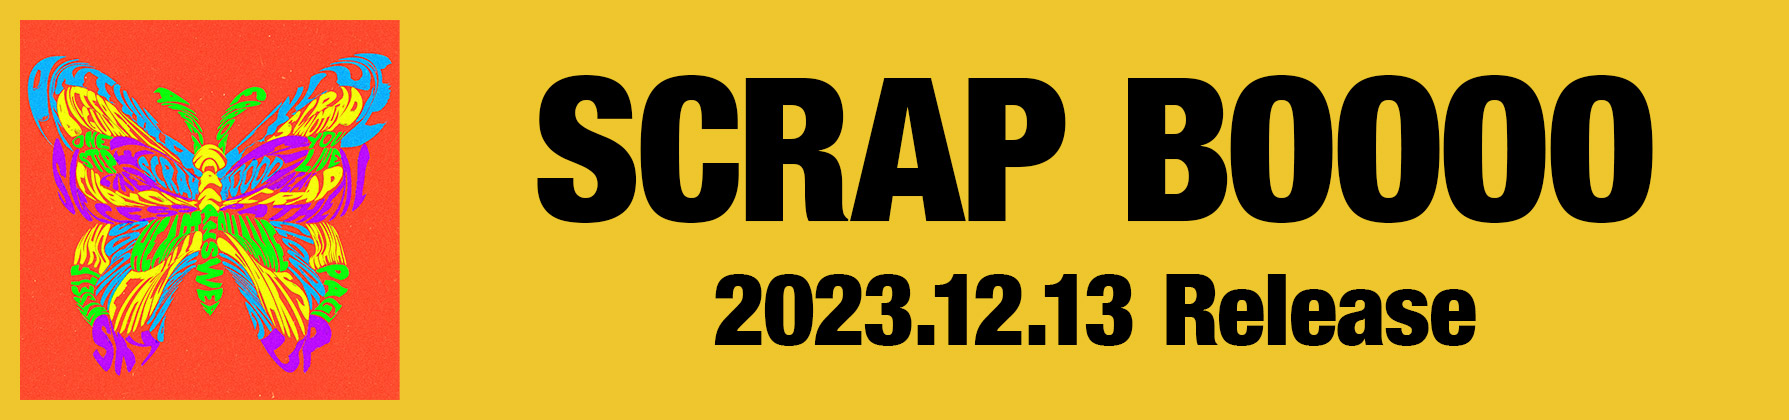 「SCRAP BOOOO」2023.12.13 Release